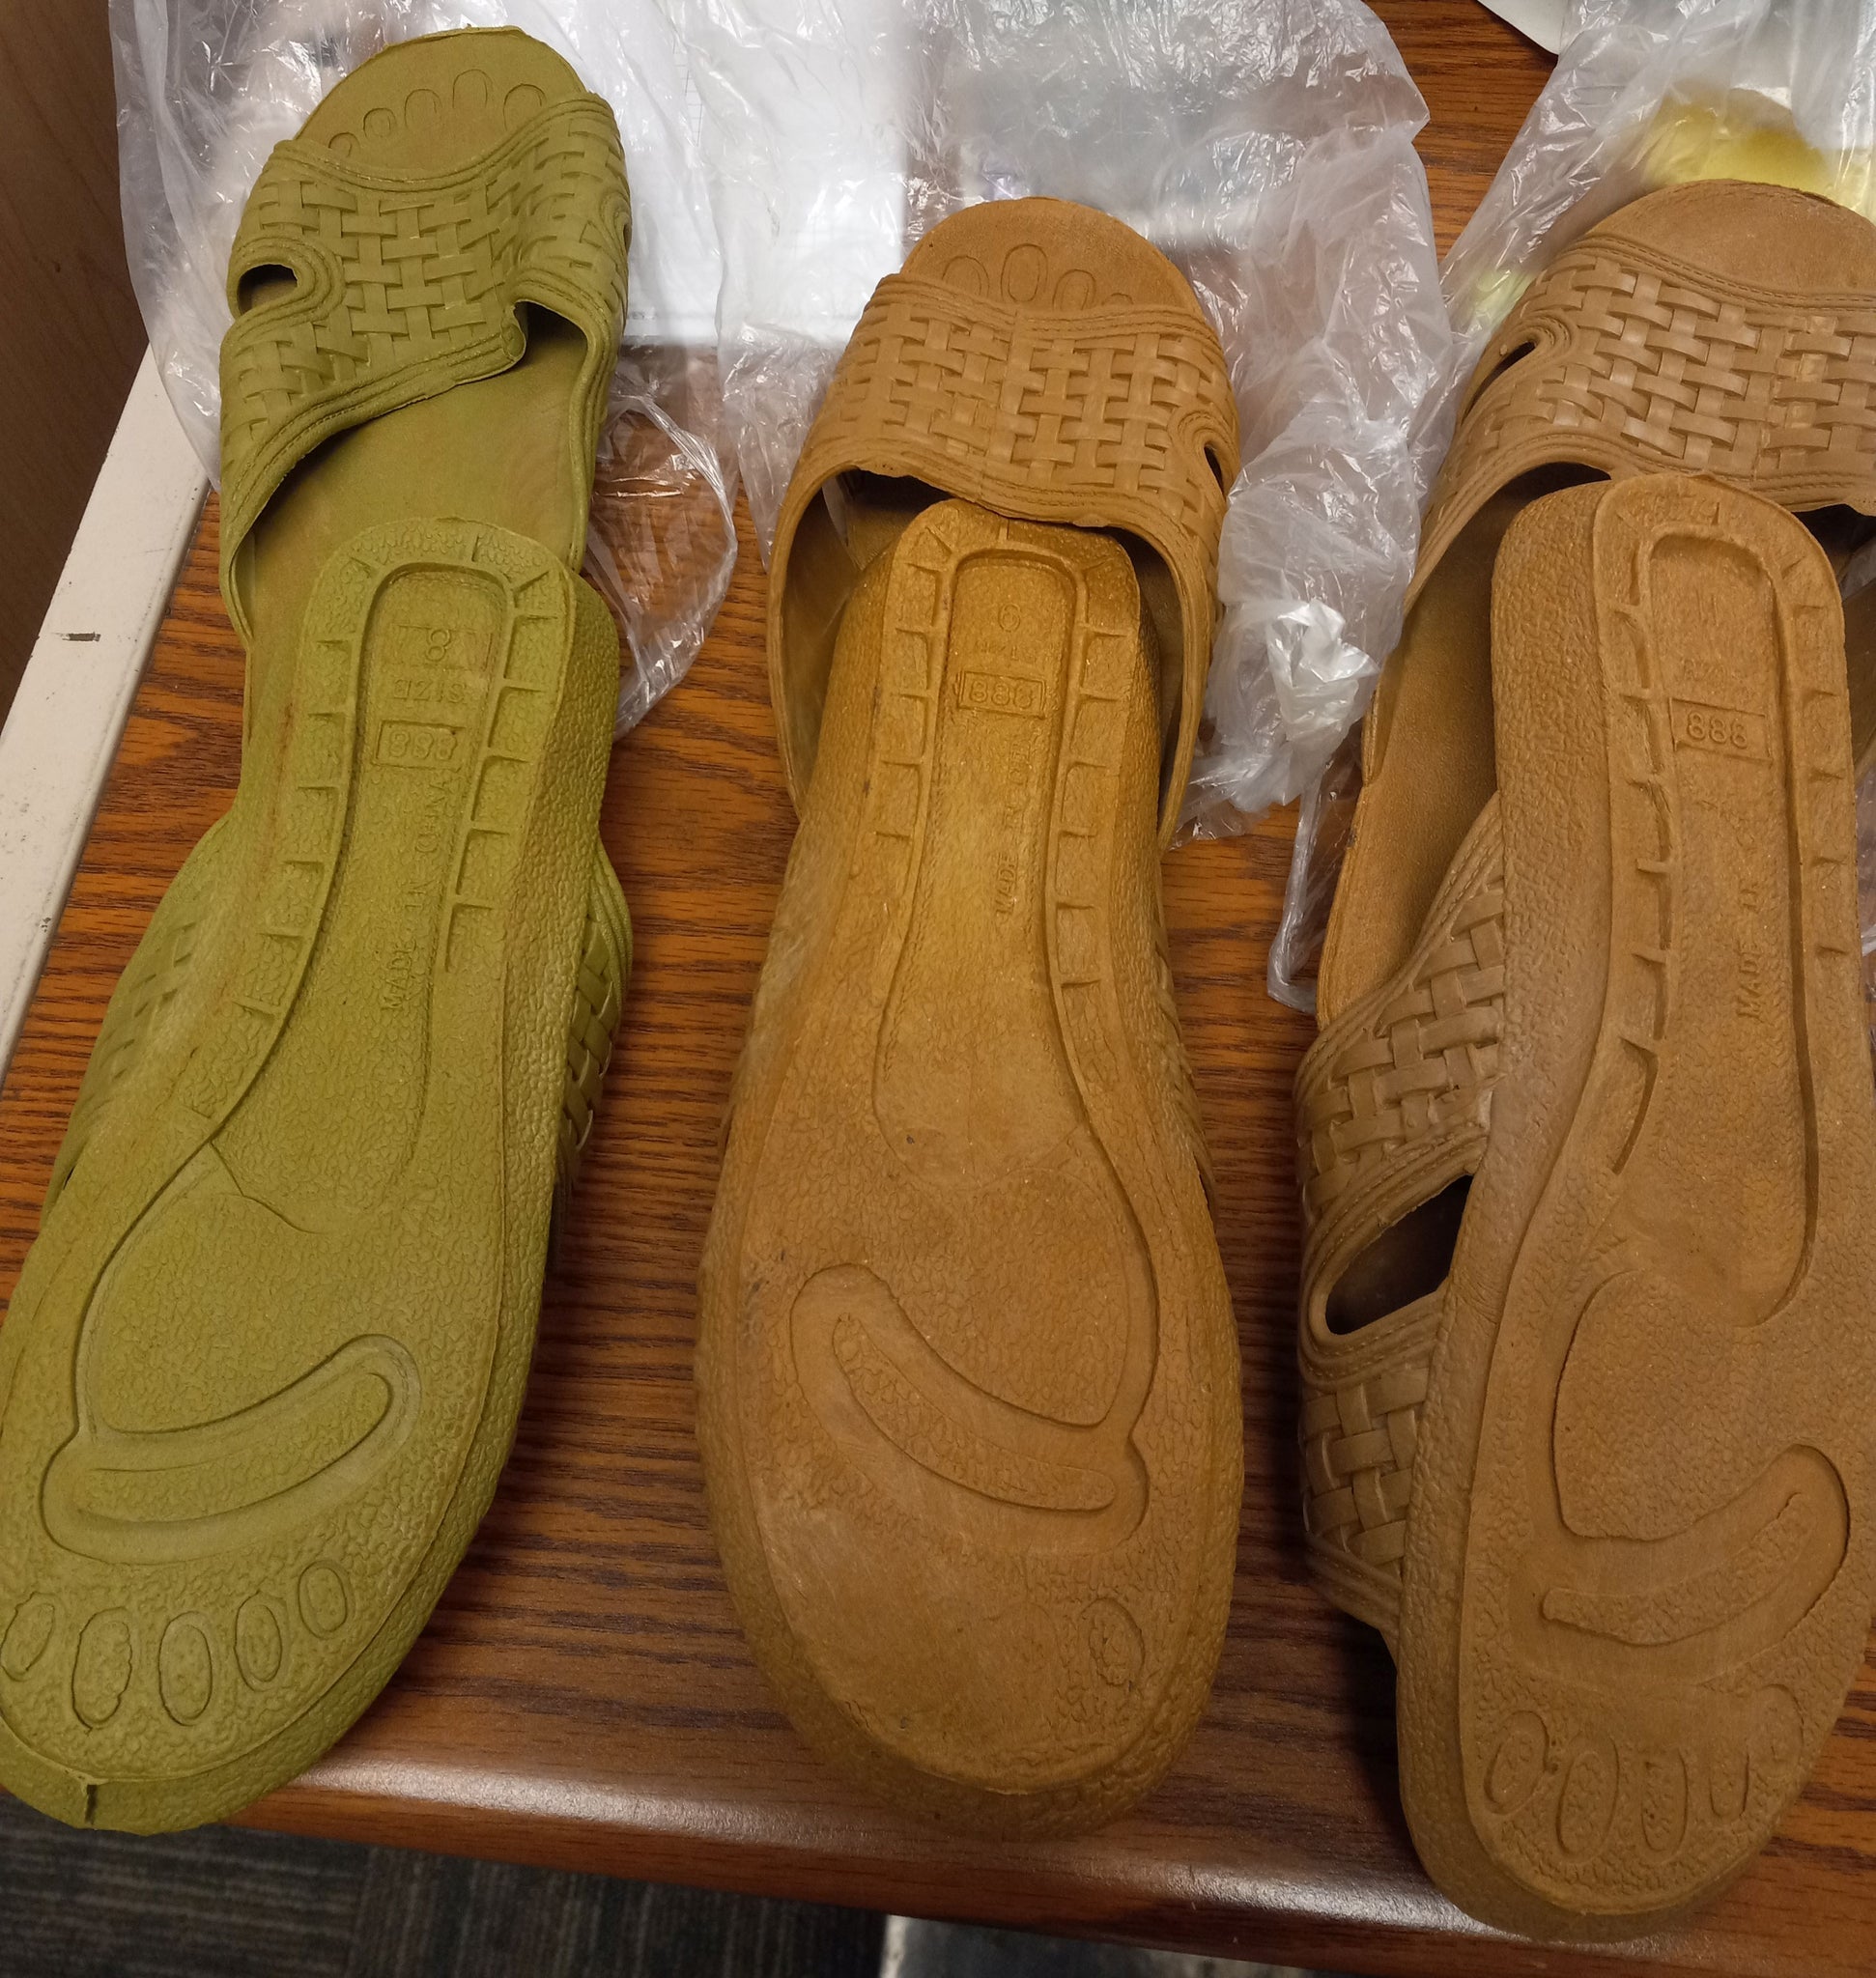 AUSLAND Pillow Slide Sandals for Men Platform Shower Shoes, Black, 9.5-10.5  : Amazon.in: Shoes & Handbags